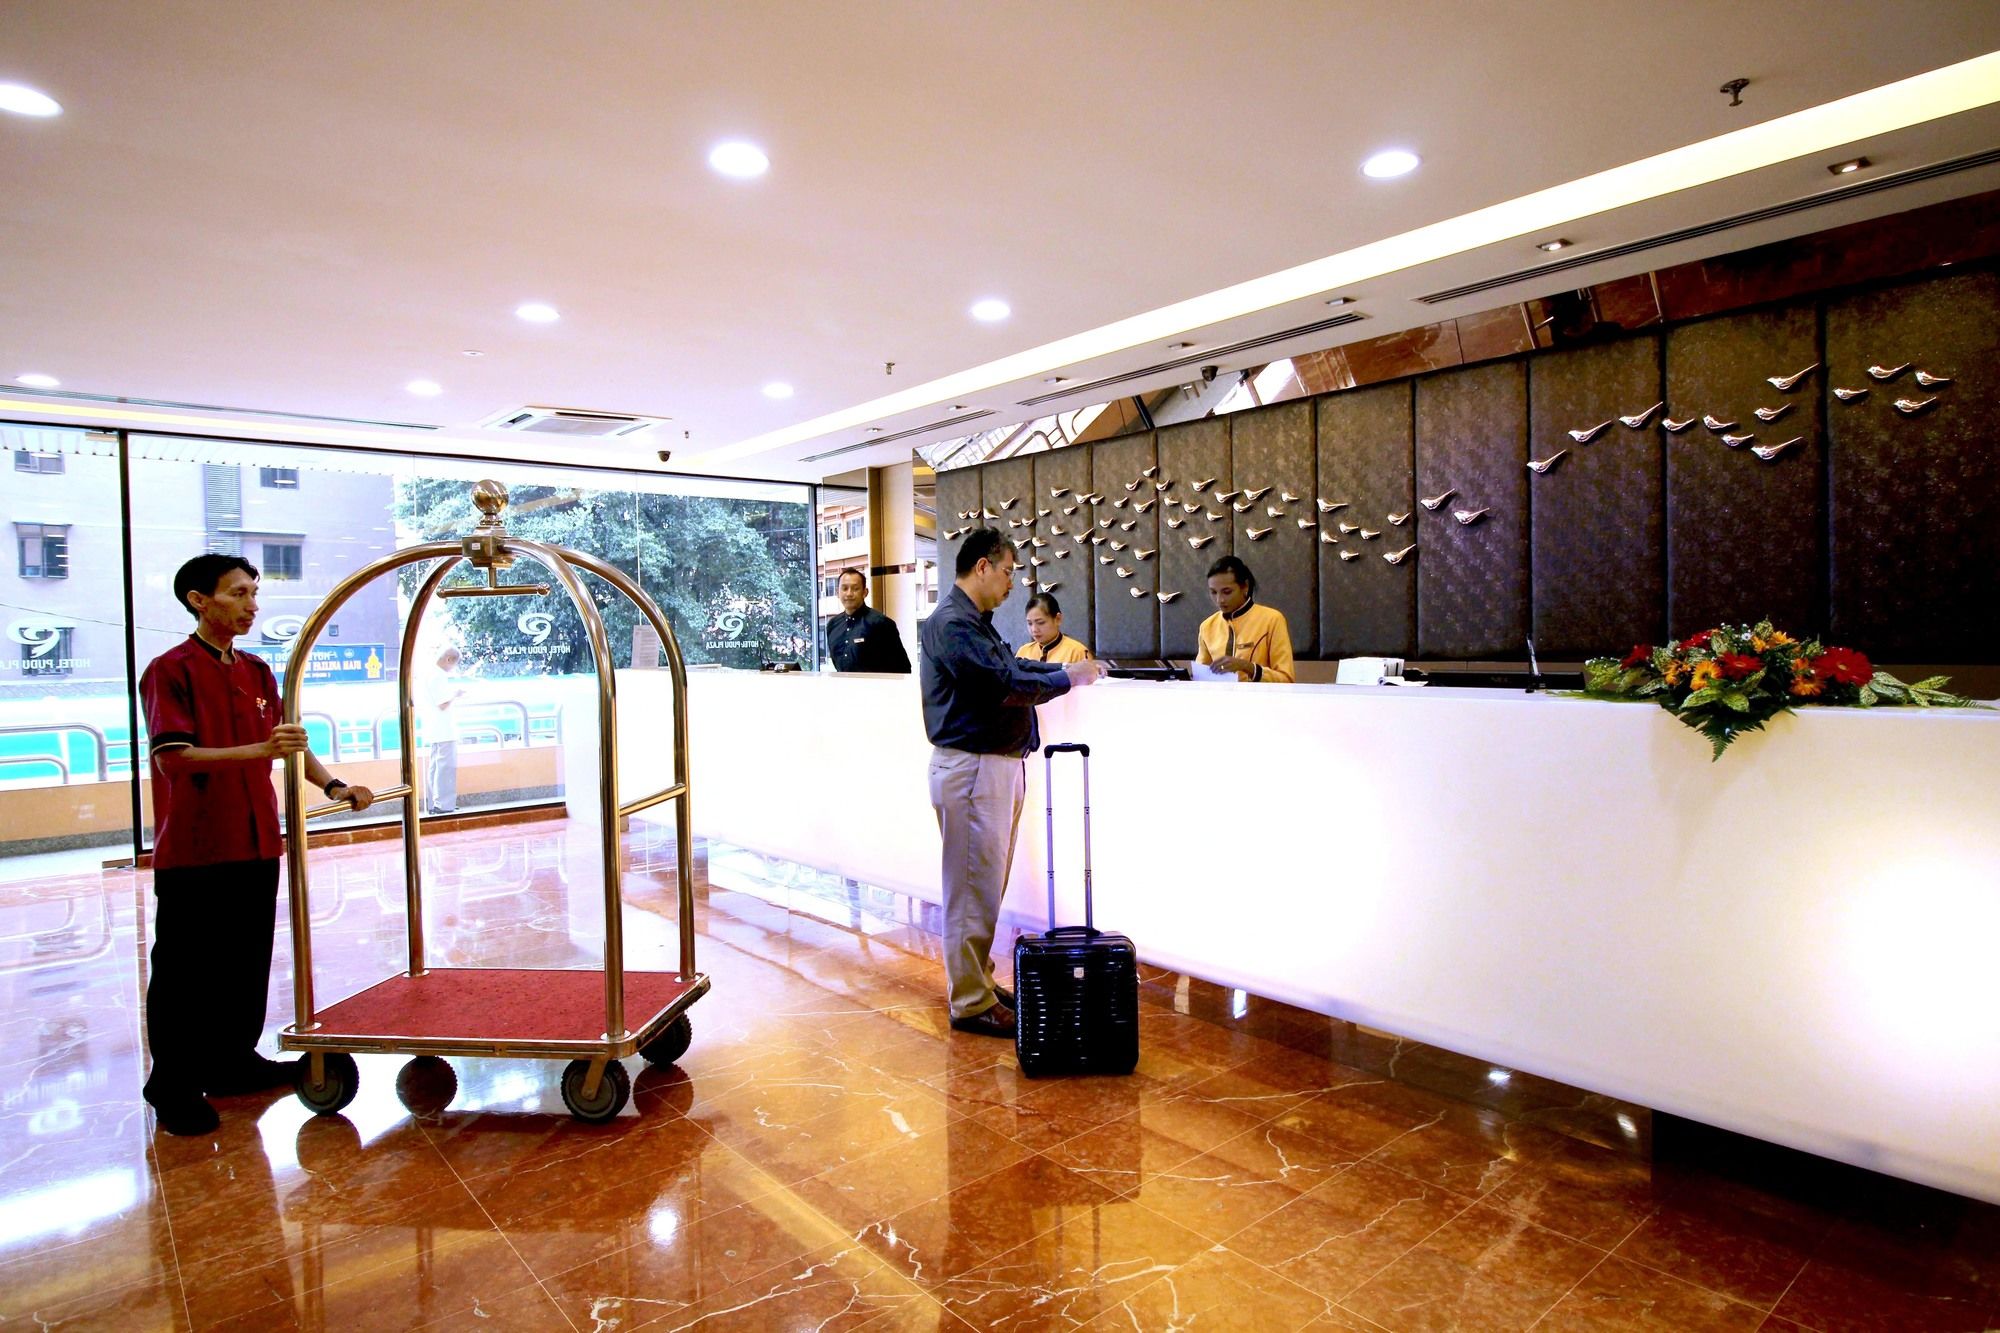 Hotel Pudu Plaza Kuala Lumpur